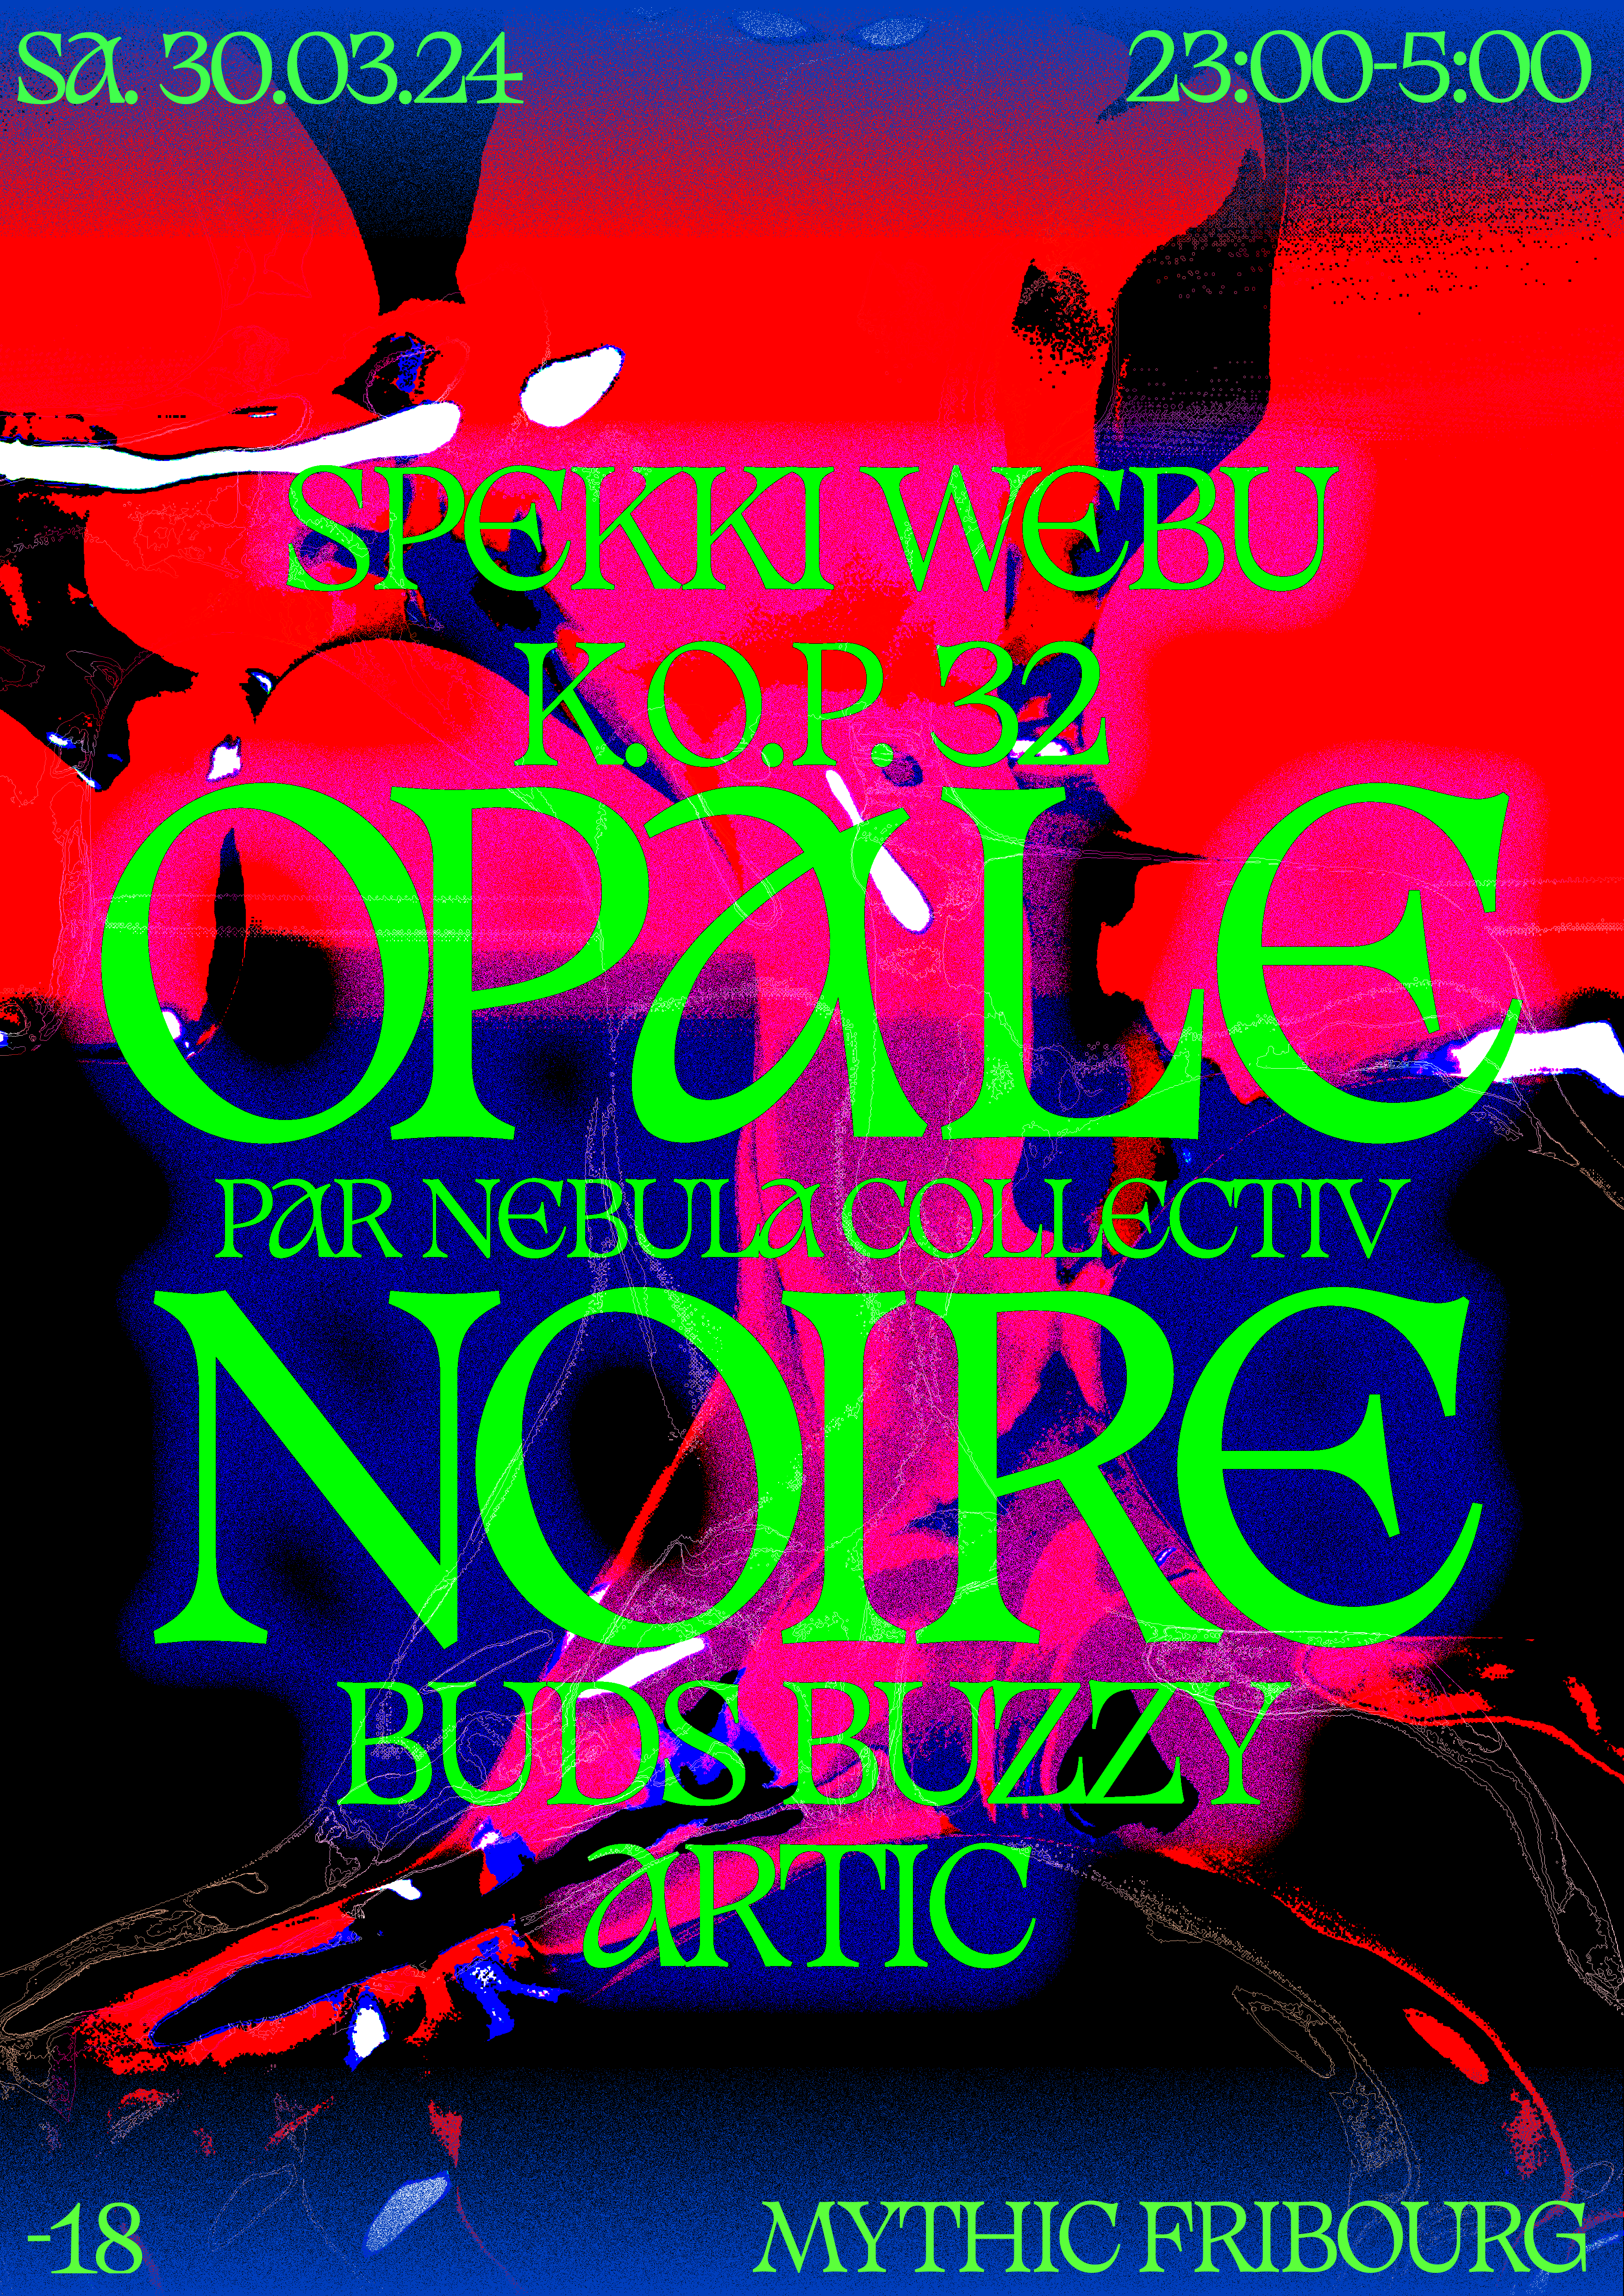 Opale Noire with Spekki Webu - K.O.P. 32 - Buds Buzzy - Artic - Página frontal